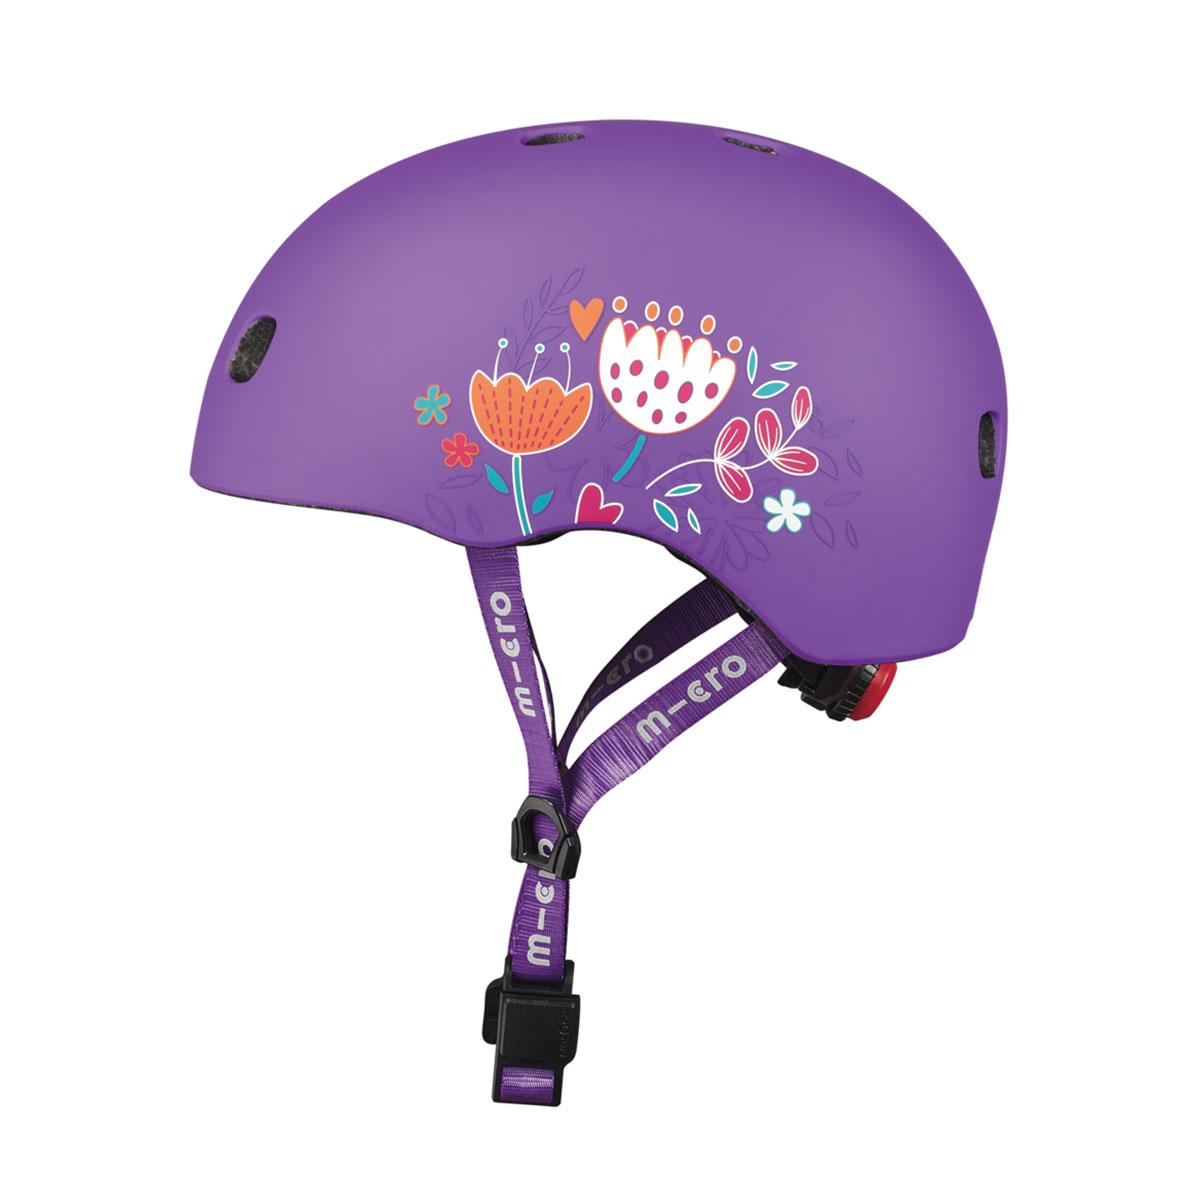 Захисний шолом micro — фіолетовий із квітами (52-56 cm, m)